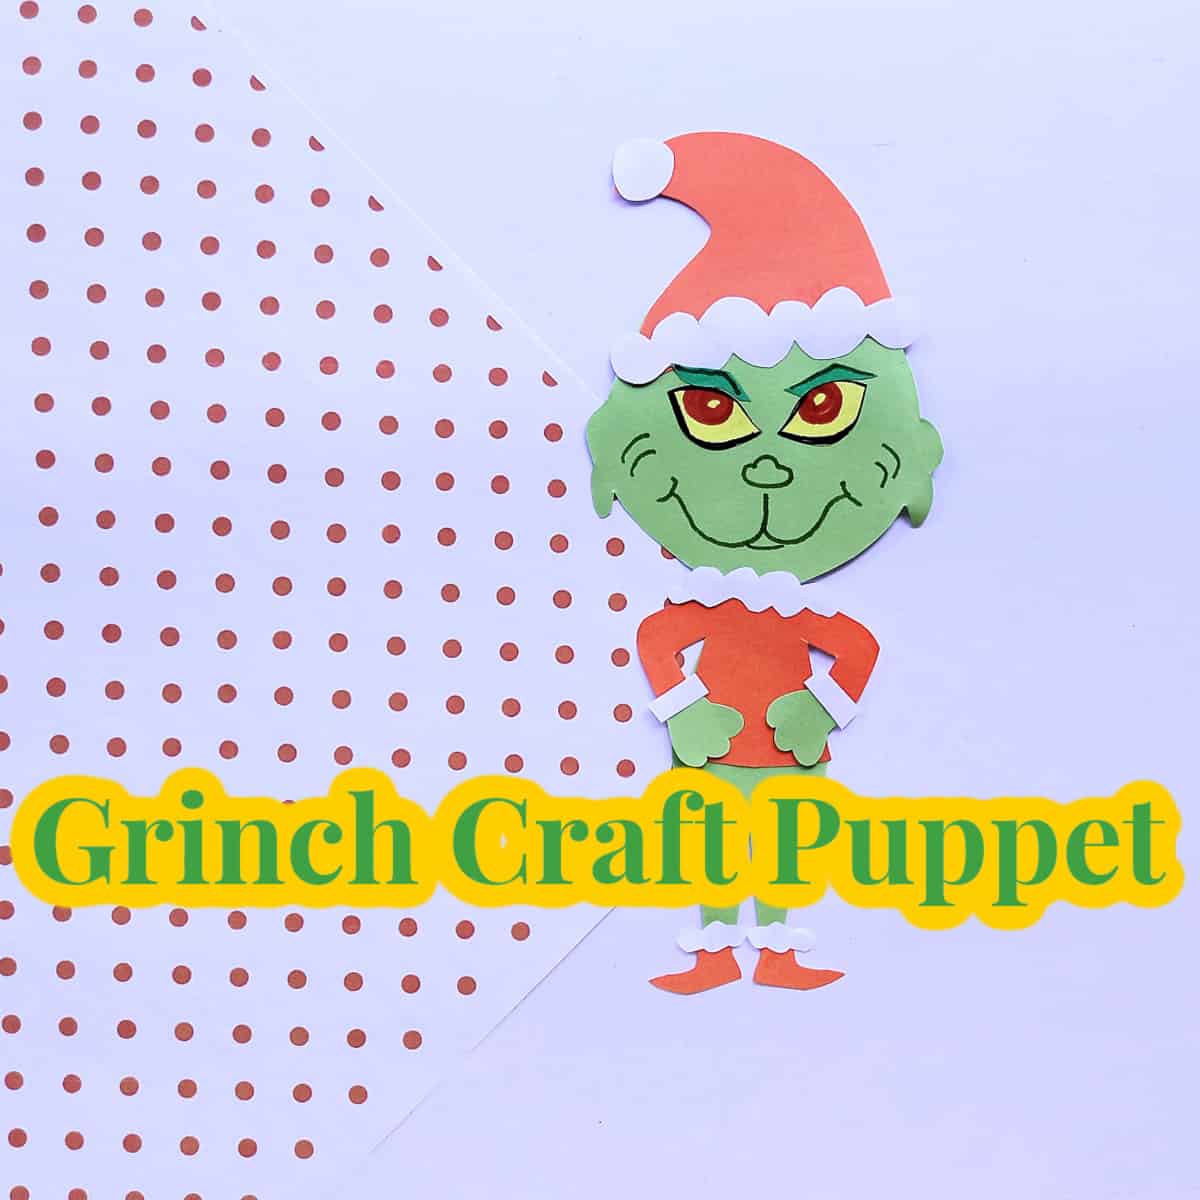 Grinch-Craft-Puppet-sq Grinch Crafts for Preschool